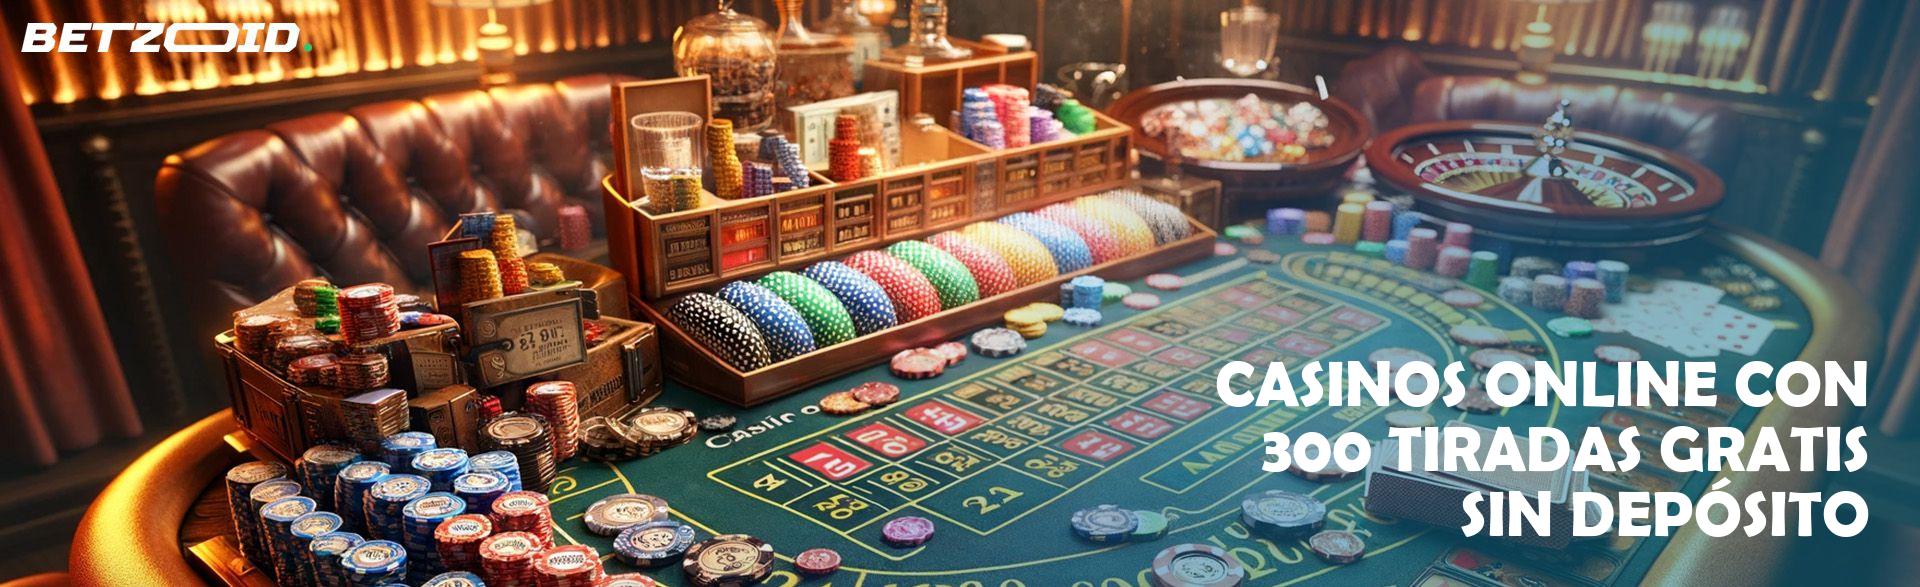 Casinos tiradas gratis sin depósito